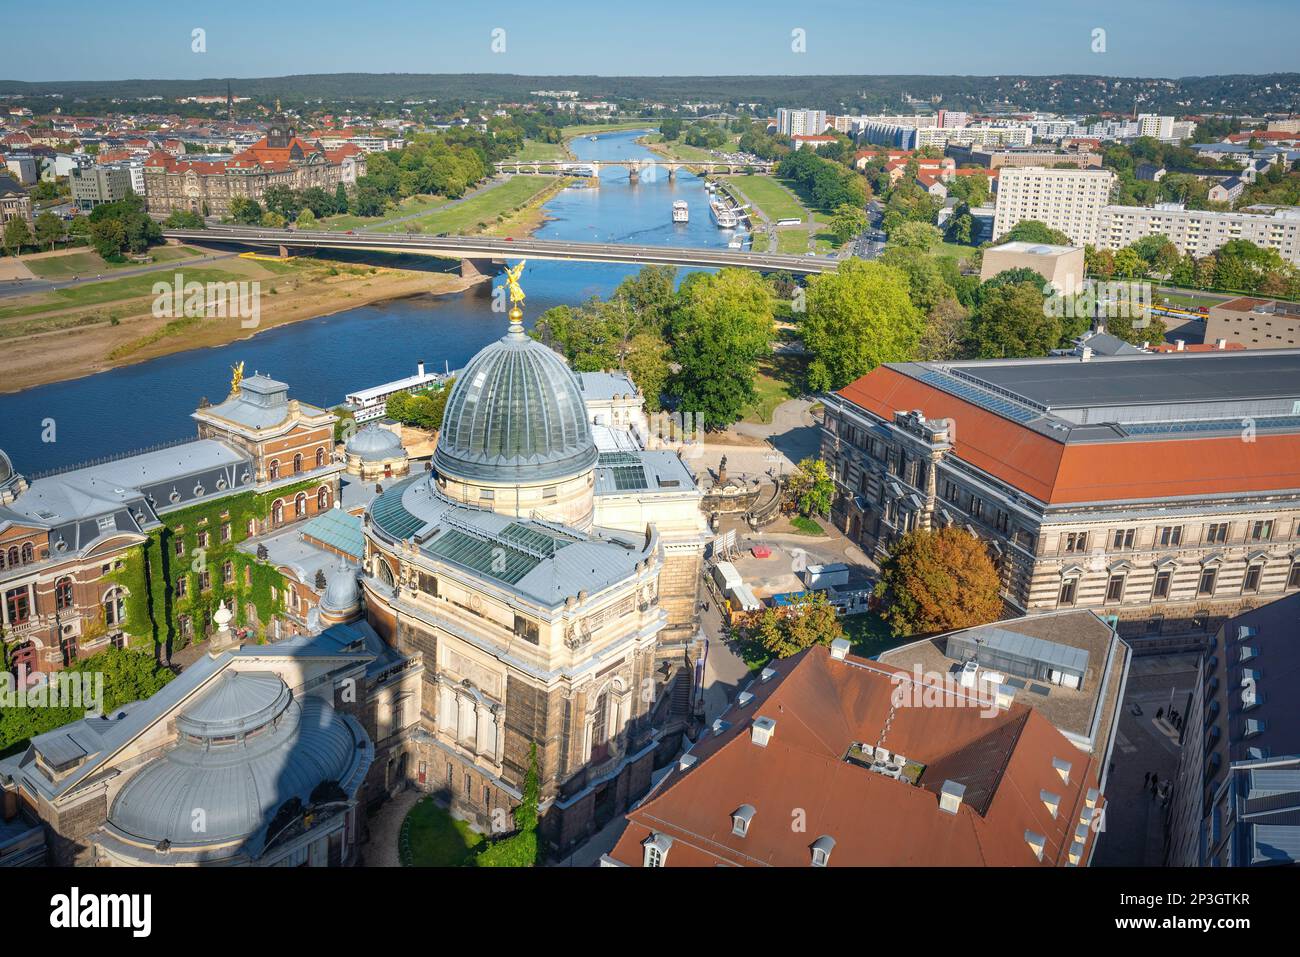 Vue aérienne de l'Académie des Beaux-Arts de Dresde et d'Albertinum - Dresde, Saxe, Allemagne Banque D'Images